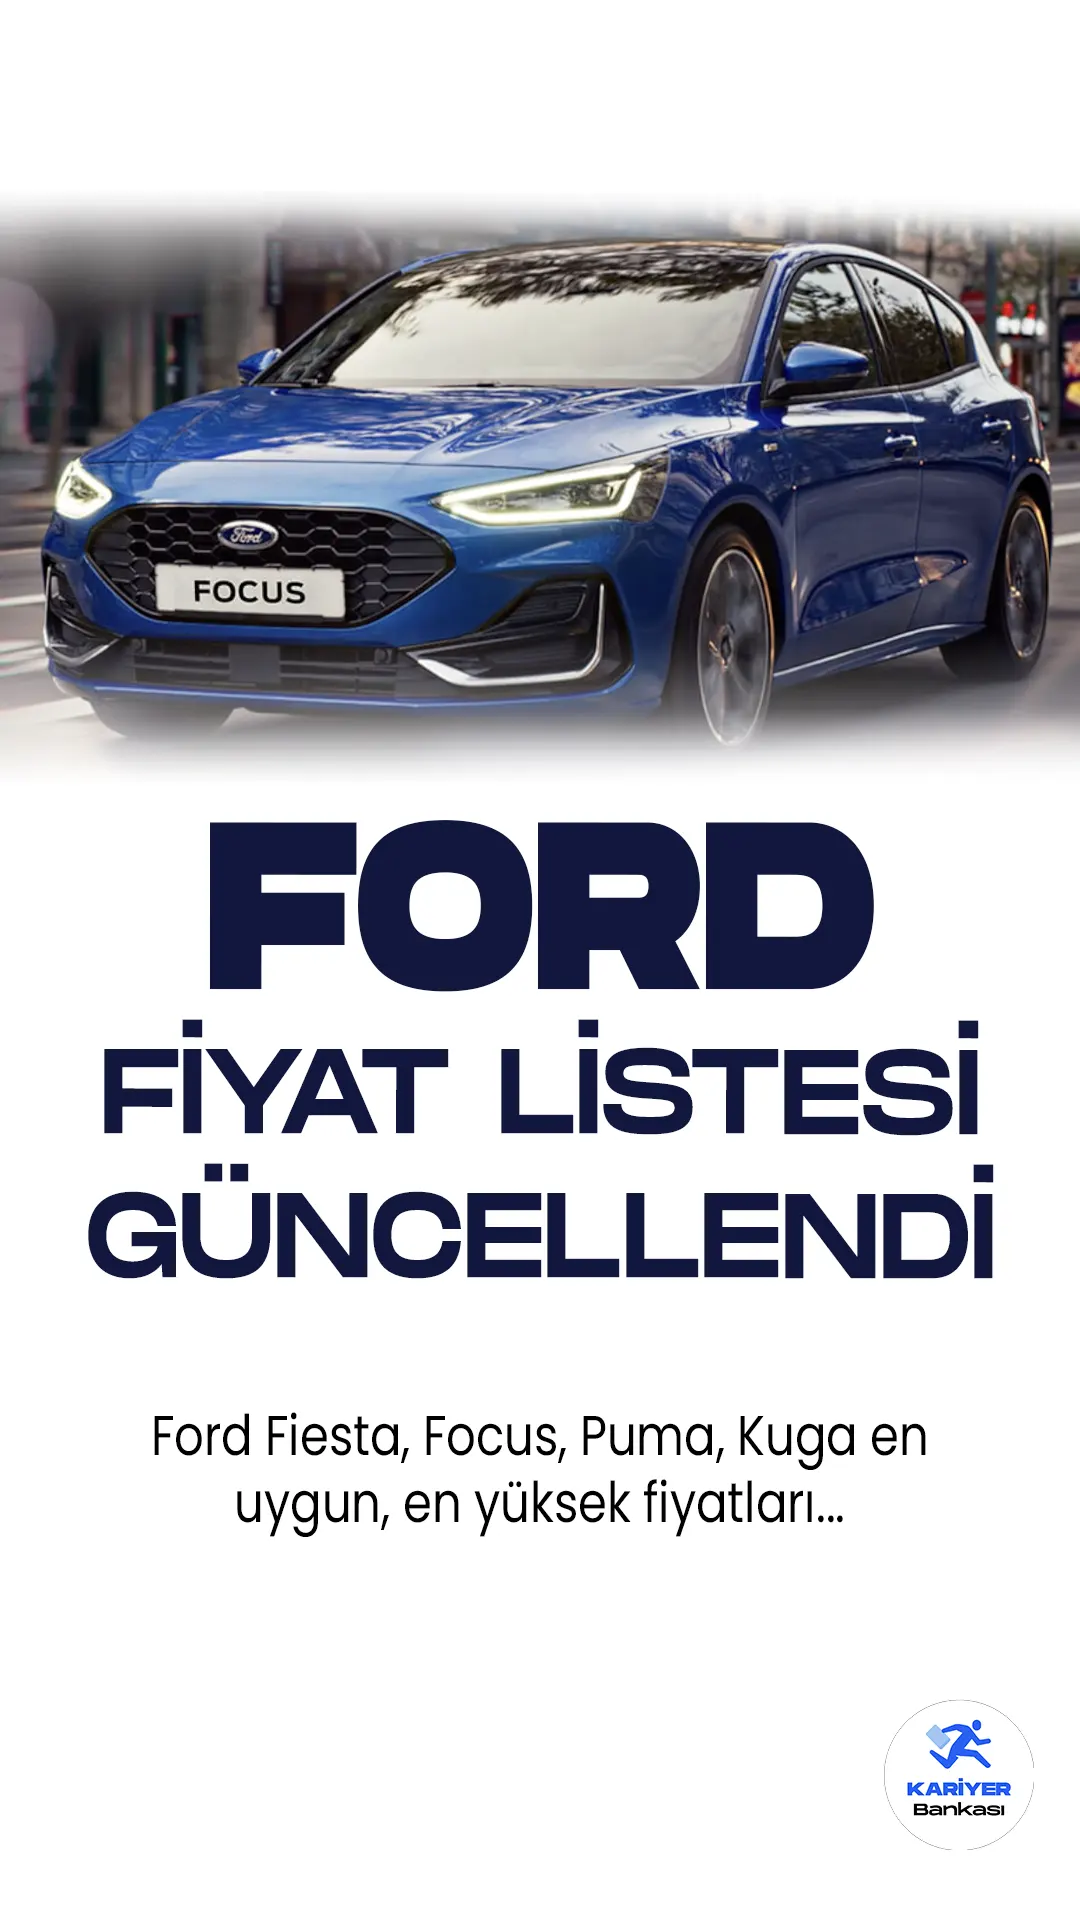 Ford Haziran 2023 Yeni Fiyat Listesi Yayımlandı!Ford, kompakt araç segmentinde beklentileri aşan bir başarı elde eden popüler modelleriyle dikkat çekiyor. Yenilikçi ve şık tasarımlarıyla öne çıkan Ford Fiesta, dinamik sürüş deneyimi ve çevik performansıyla kullanıcıların tercihi olmaya devam ediyor. Ford Puma, kompakt SUV segmentinde rakiplerine meydan okuyor. Yüksek sürüş konforu ve geniş iç mekanıyla dikkat çeken Puma, güçlü motor seçenekleriyle de performansıyla öne çıkıyor. Ford Kuga ise geniş iç hacmi, gelişmiş güvenlik sistemleri ve çevre dostu motor seçenekleriyle dikkat çekiyor. Ford Focus ise sportif ve şık tasarımıyla, dinamik sürüş özellikleriyle otomobil severlerin beğenisini kazanıyor. Ford'un bu modelleri, segmentlerindeki liderliklerini sürdürmeye devam ediyor.